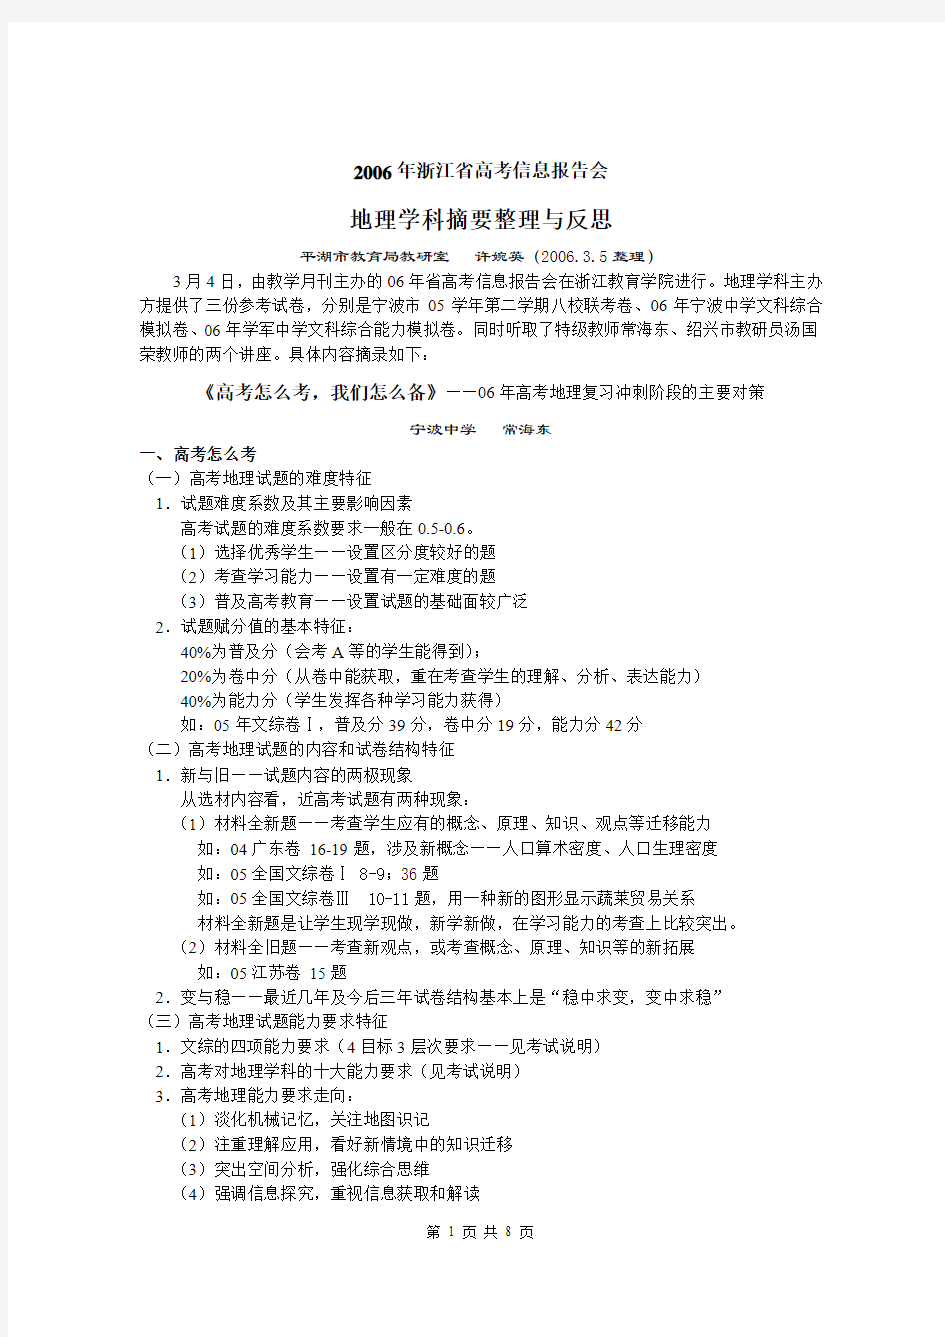 [高考必看]2006年浙江省高考信息报告会